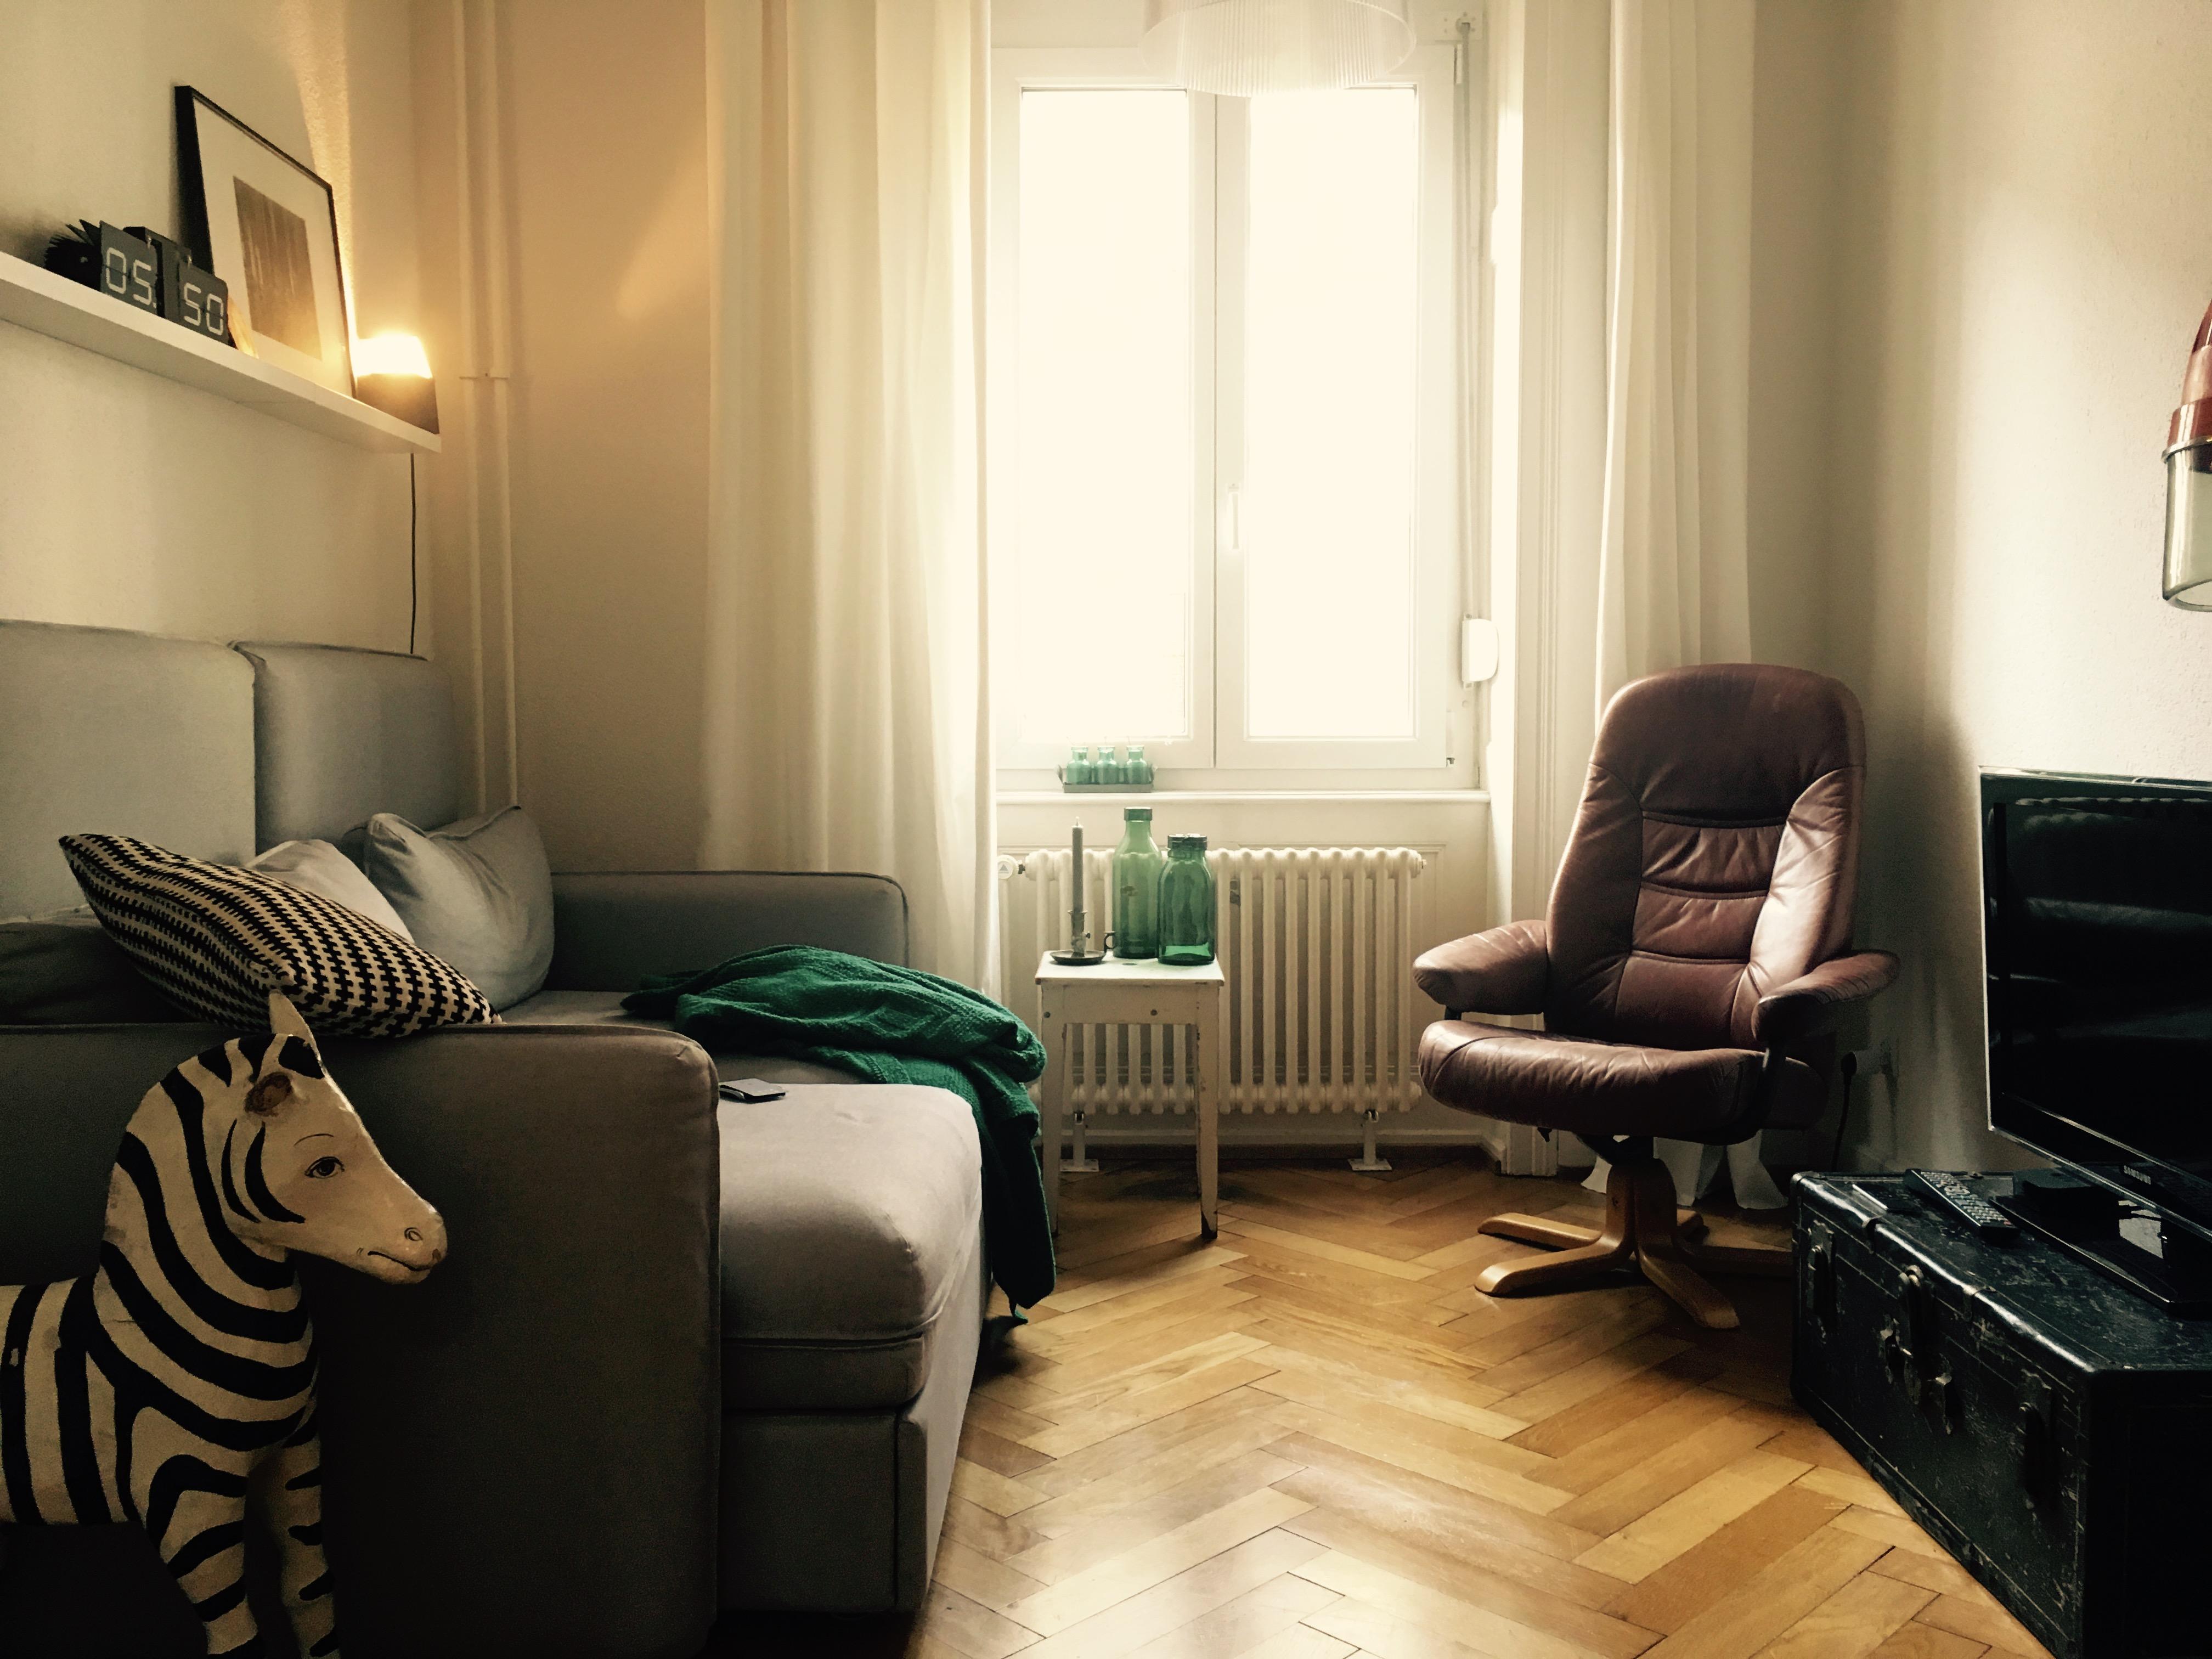 klein, aber fein; und mein: gemütliches wohnzimmer...
#home #interior #altundneu #fundstücke #zebraalshaustier
